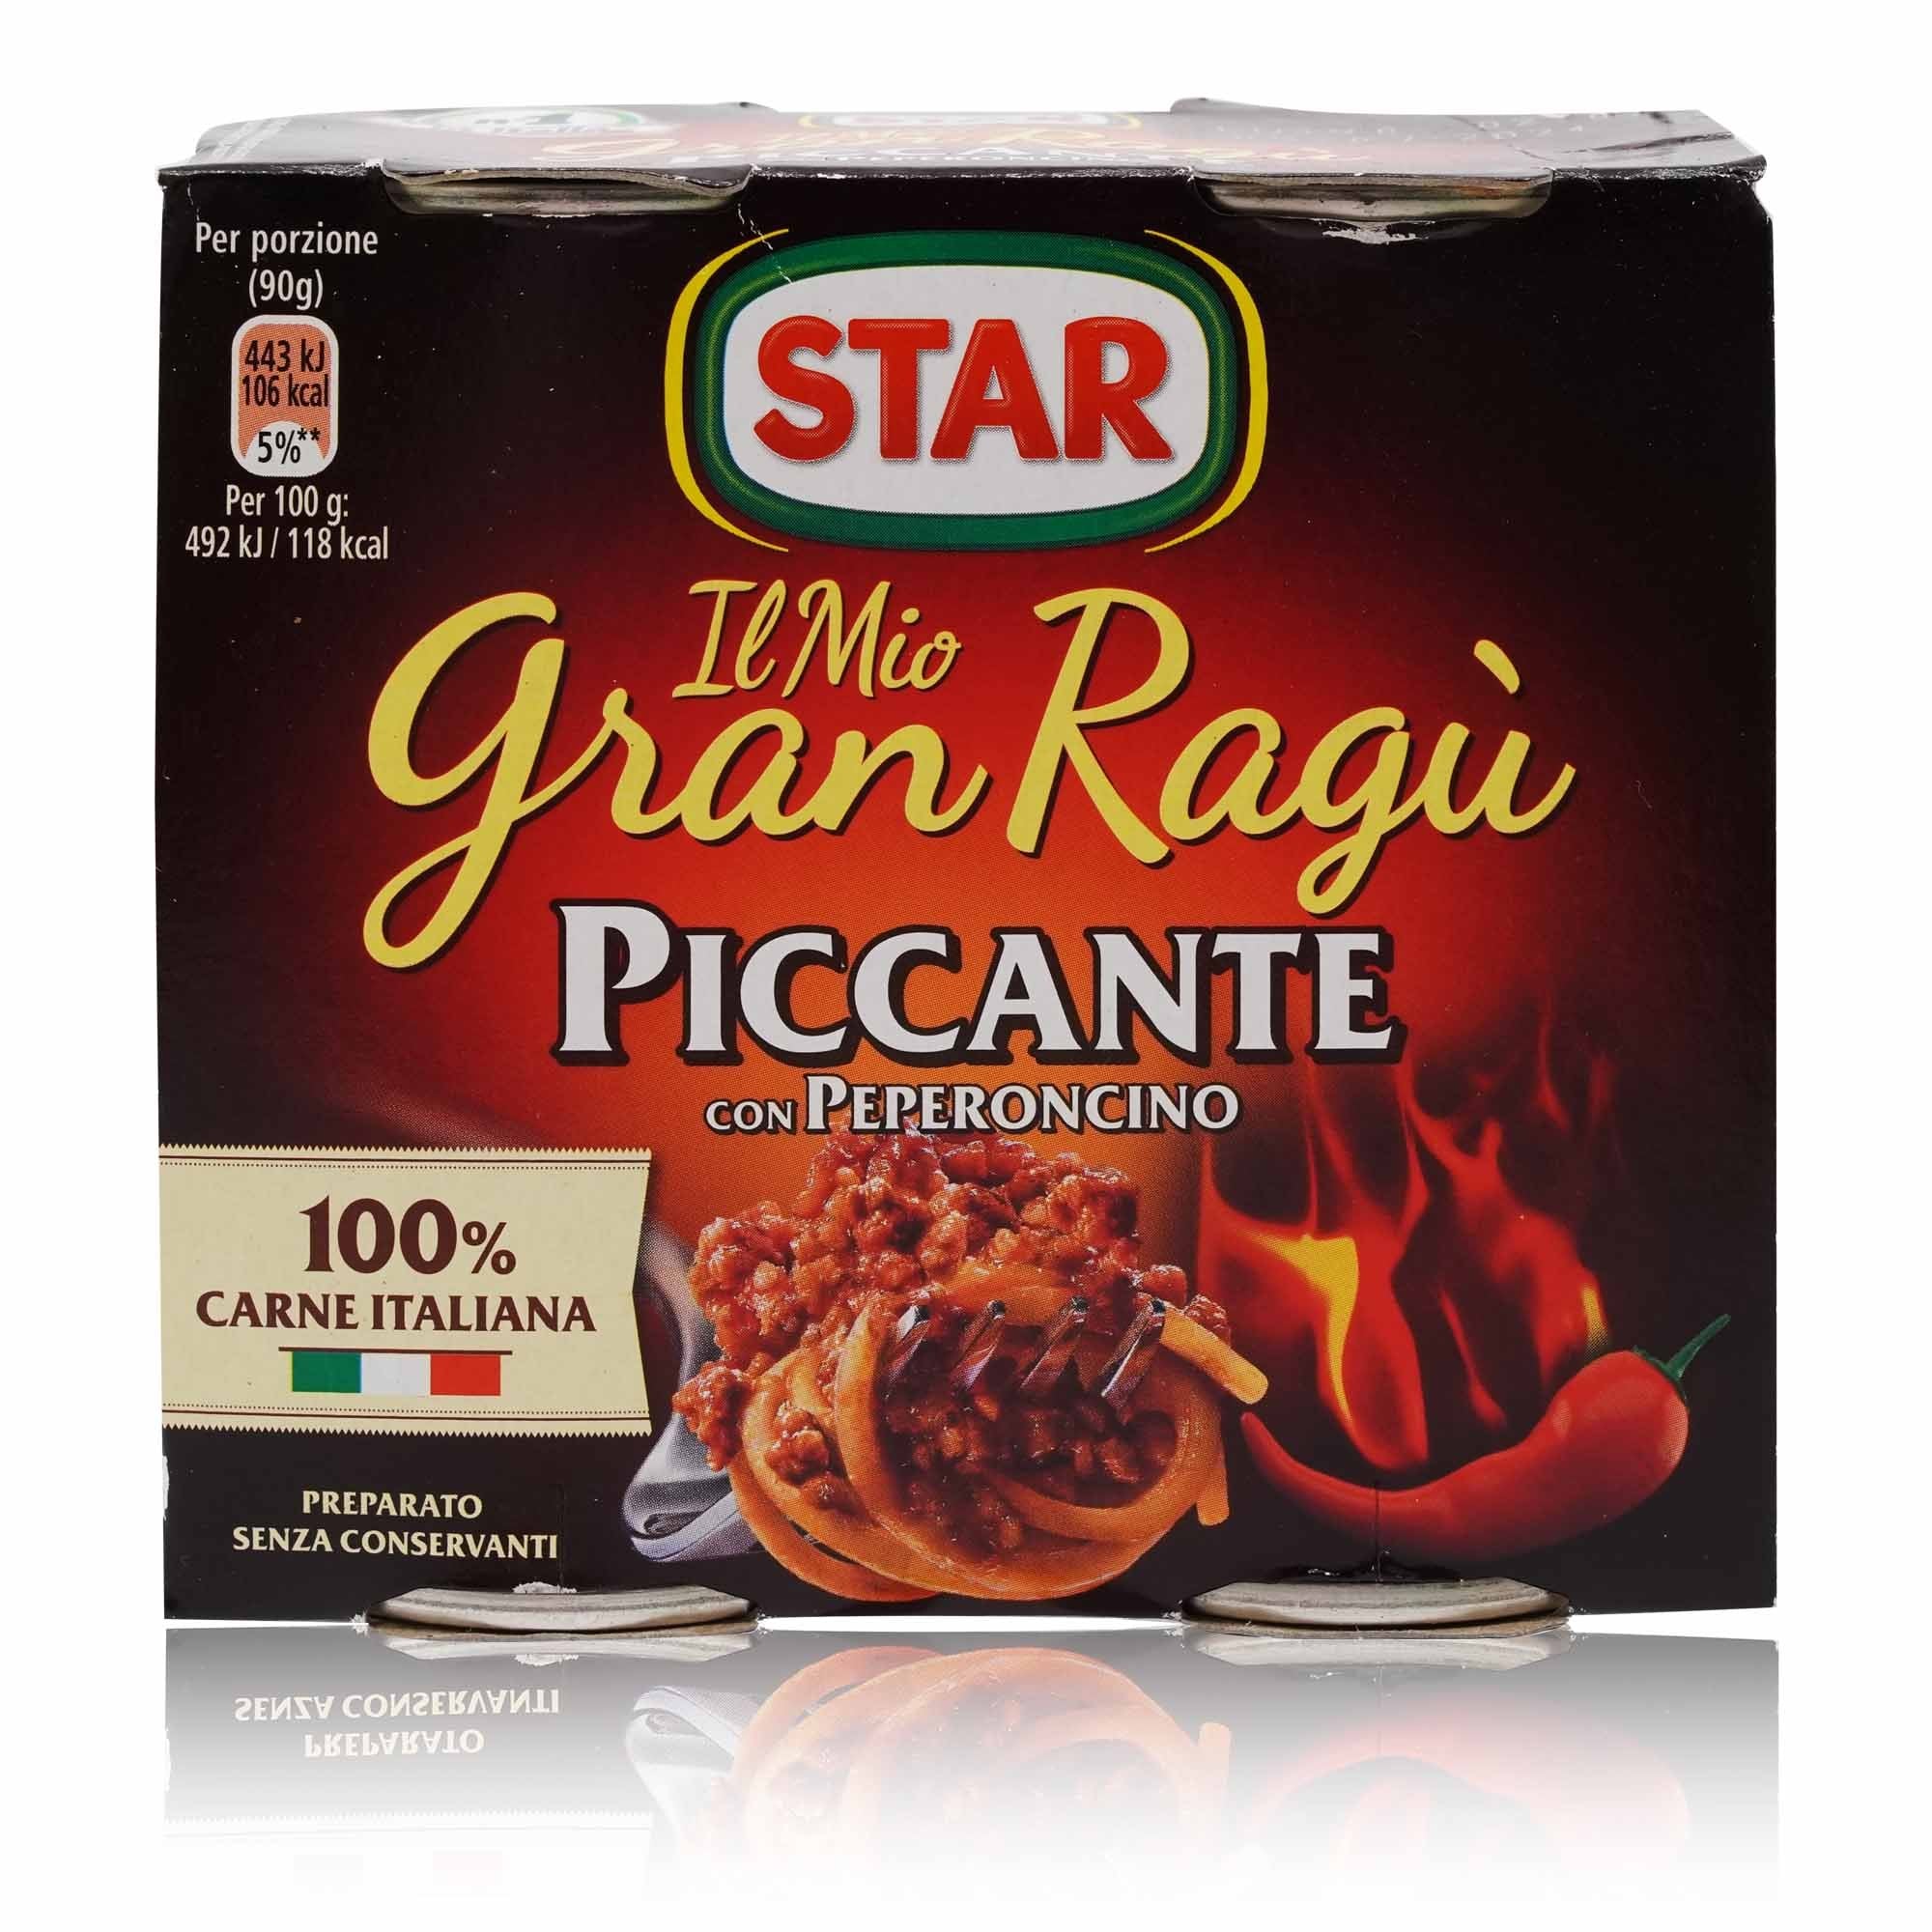 STAR Gran Ragù piccante – Hackfleischsosse mit Chili - 0,360kg - italienisch-einkaufen.de